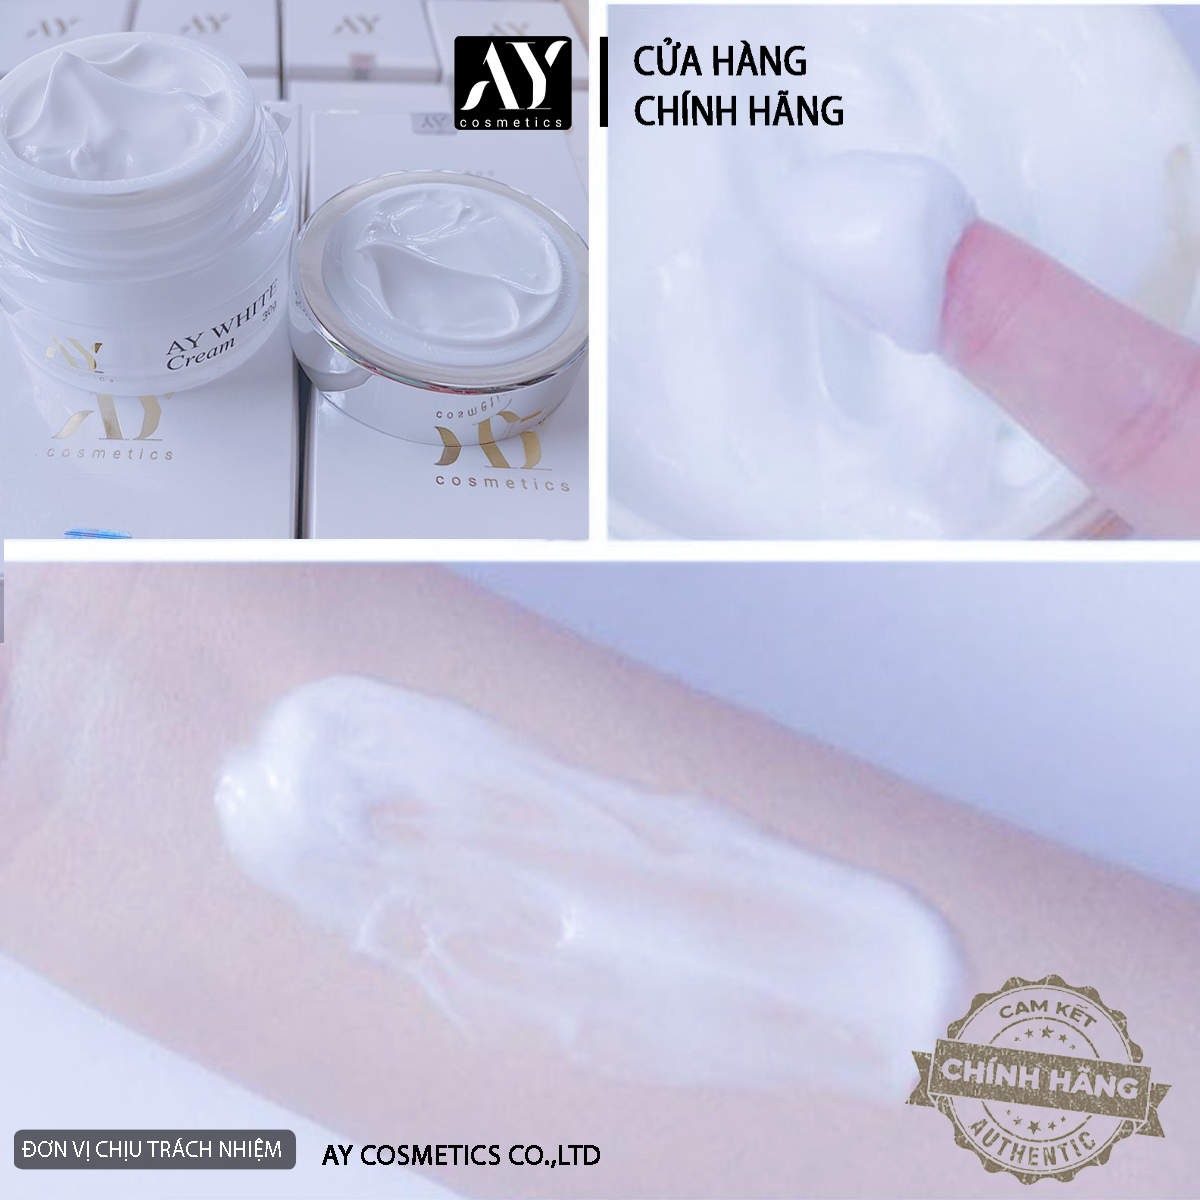 Combo  dưỡng trắng tinh chất alpha arbutin ,b5 AY WHTE cream 30g cấp nước dưỡng ẩm  AY COSMETICS